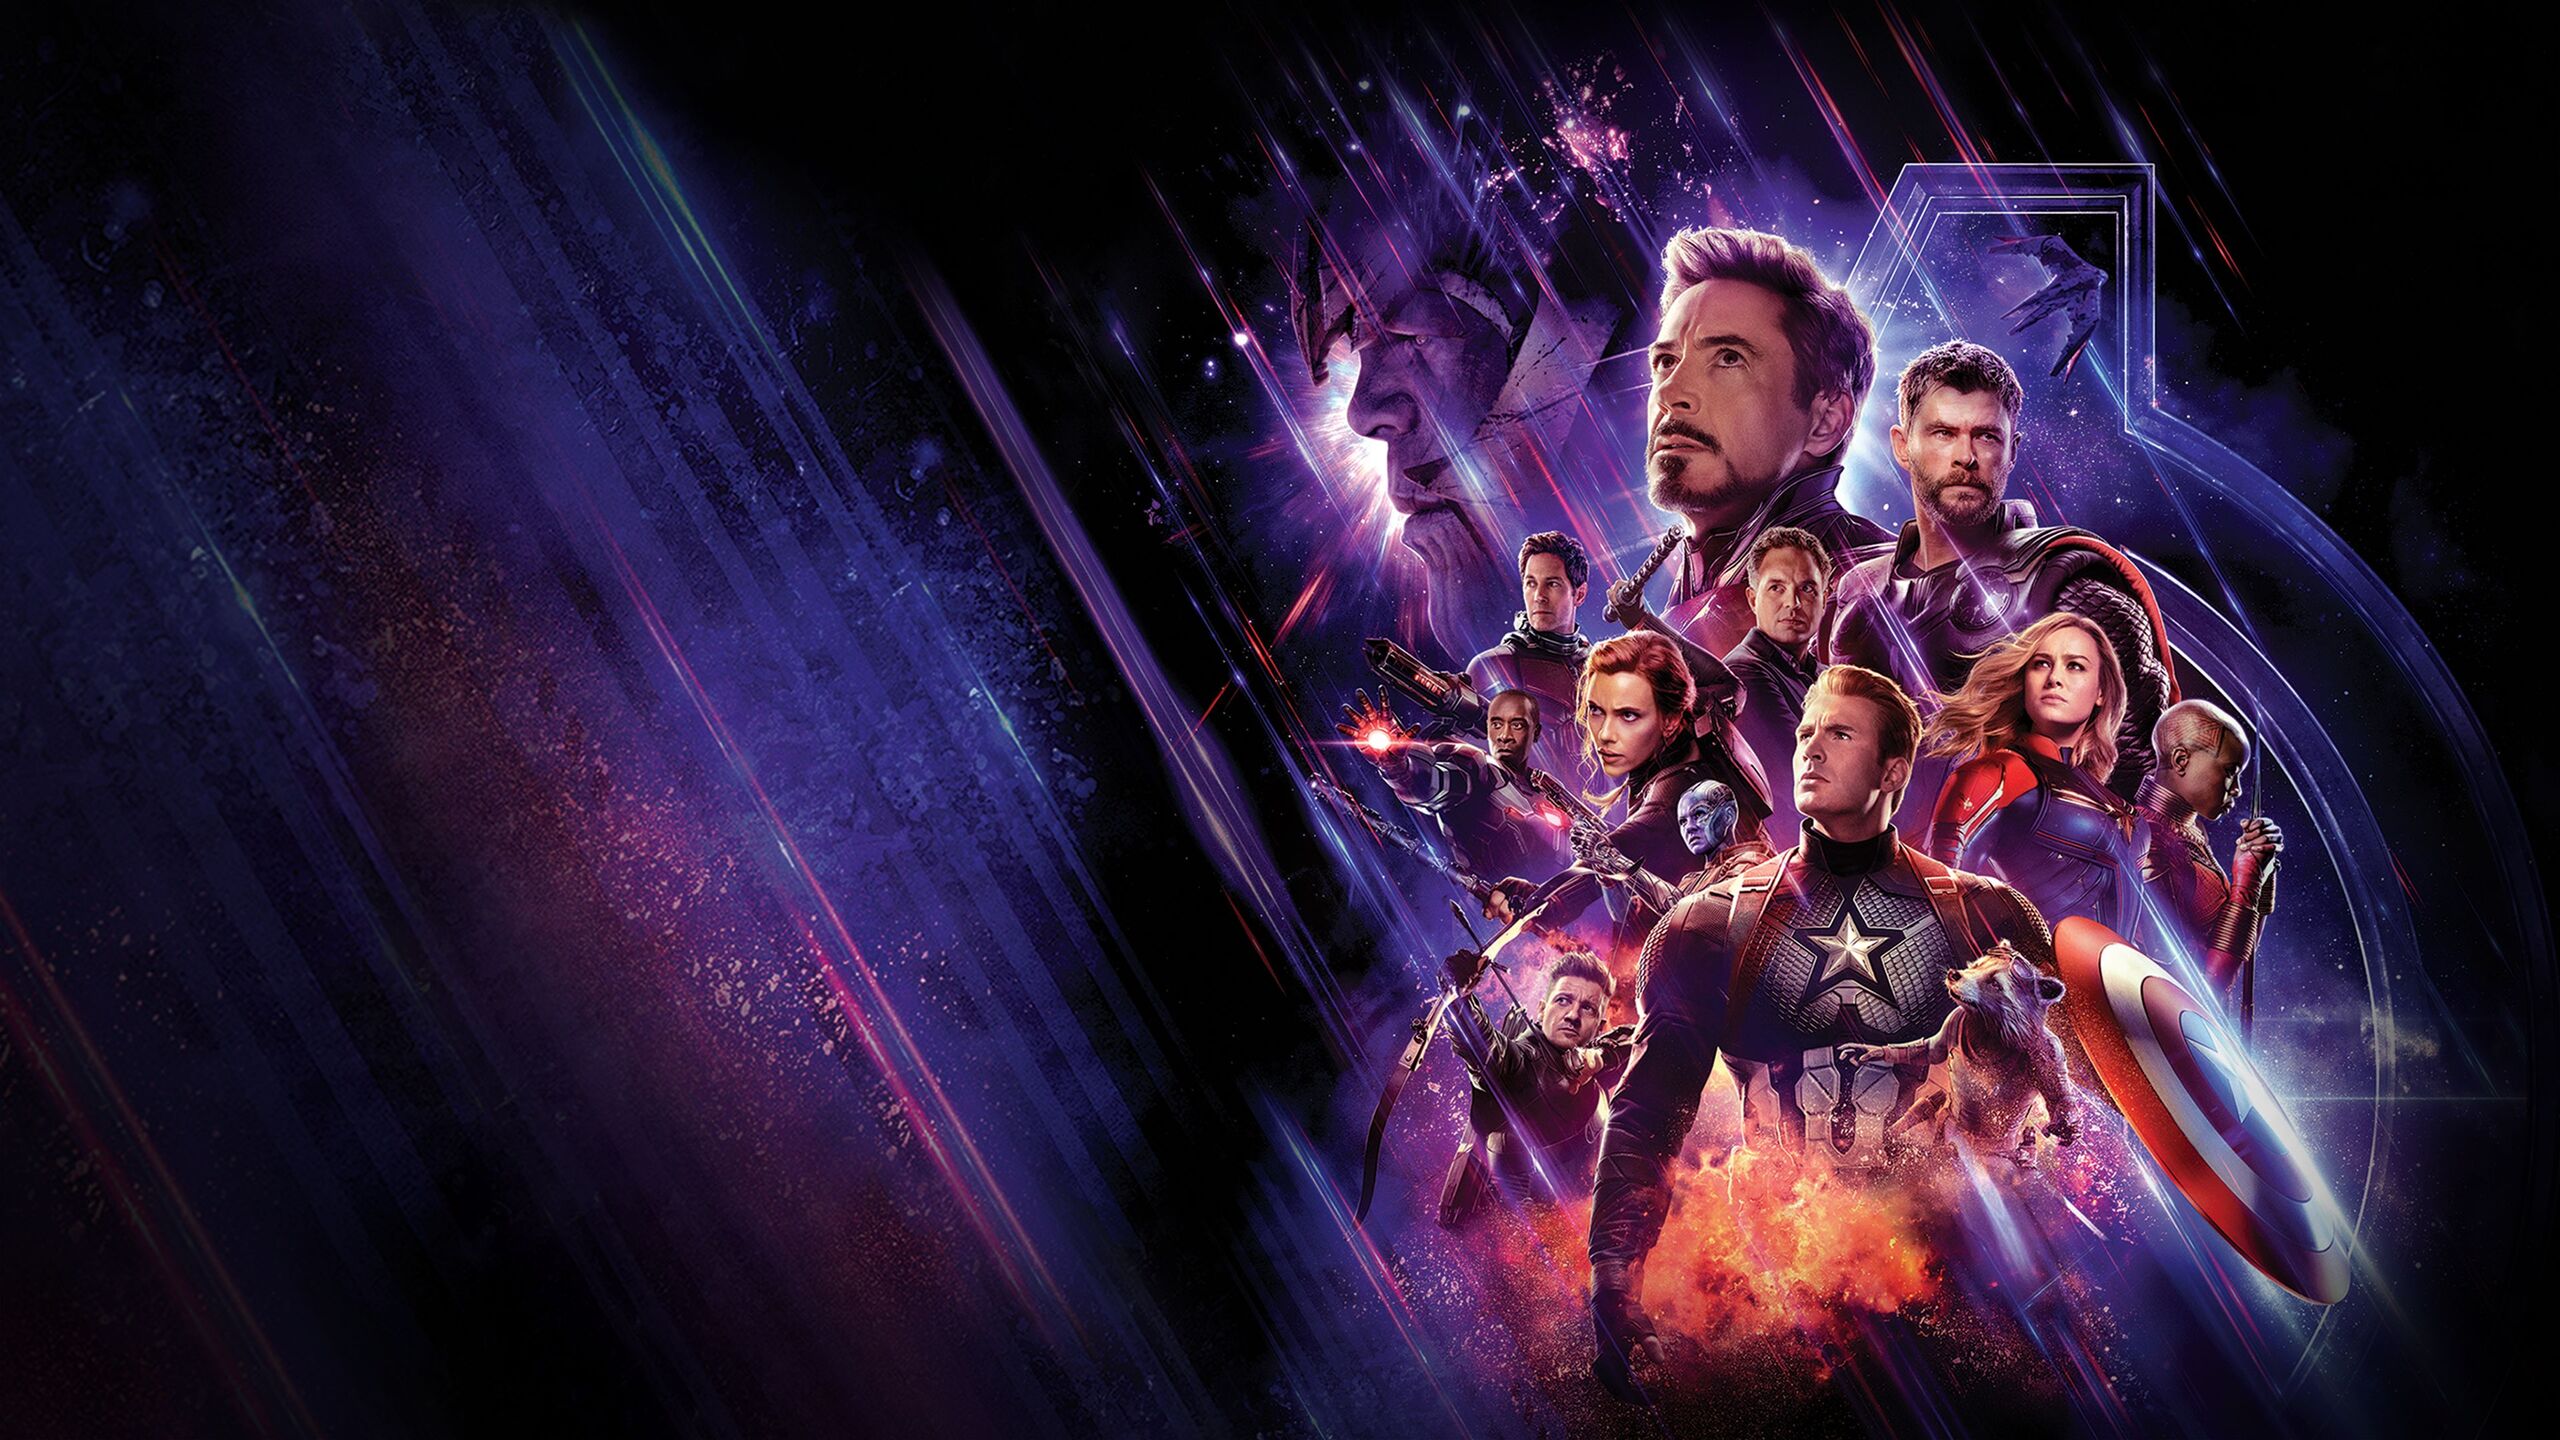 avengers endgame 4k hdr full movie download free